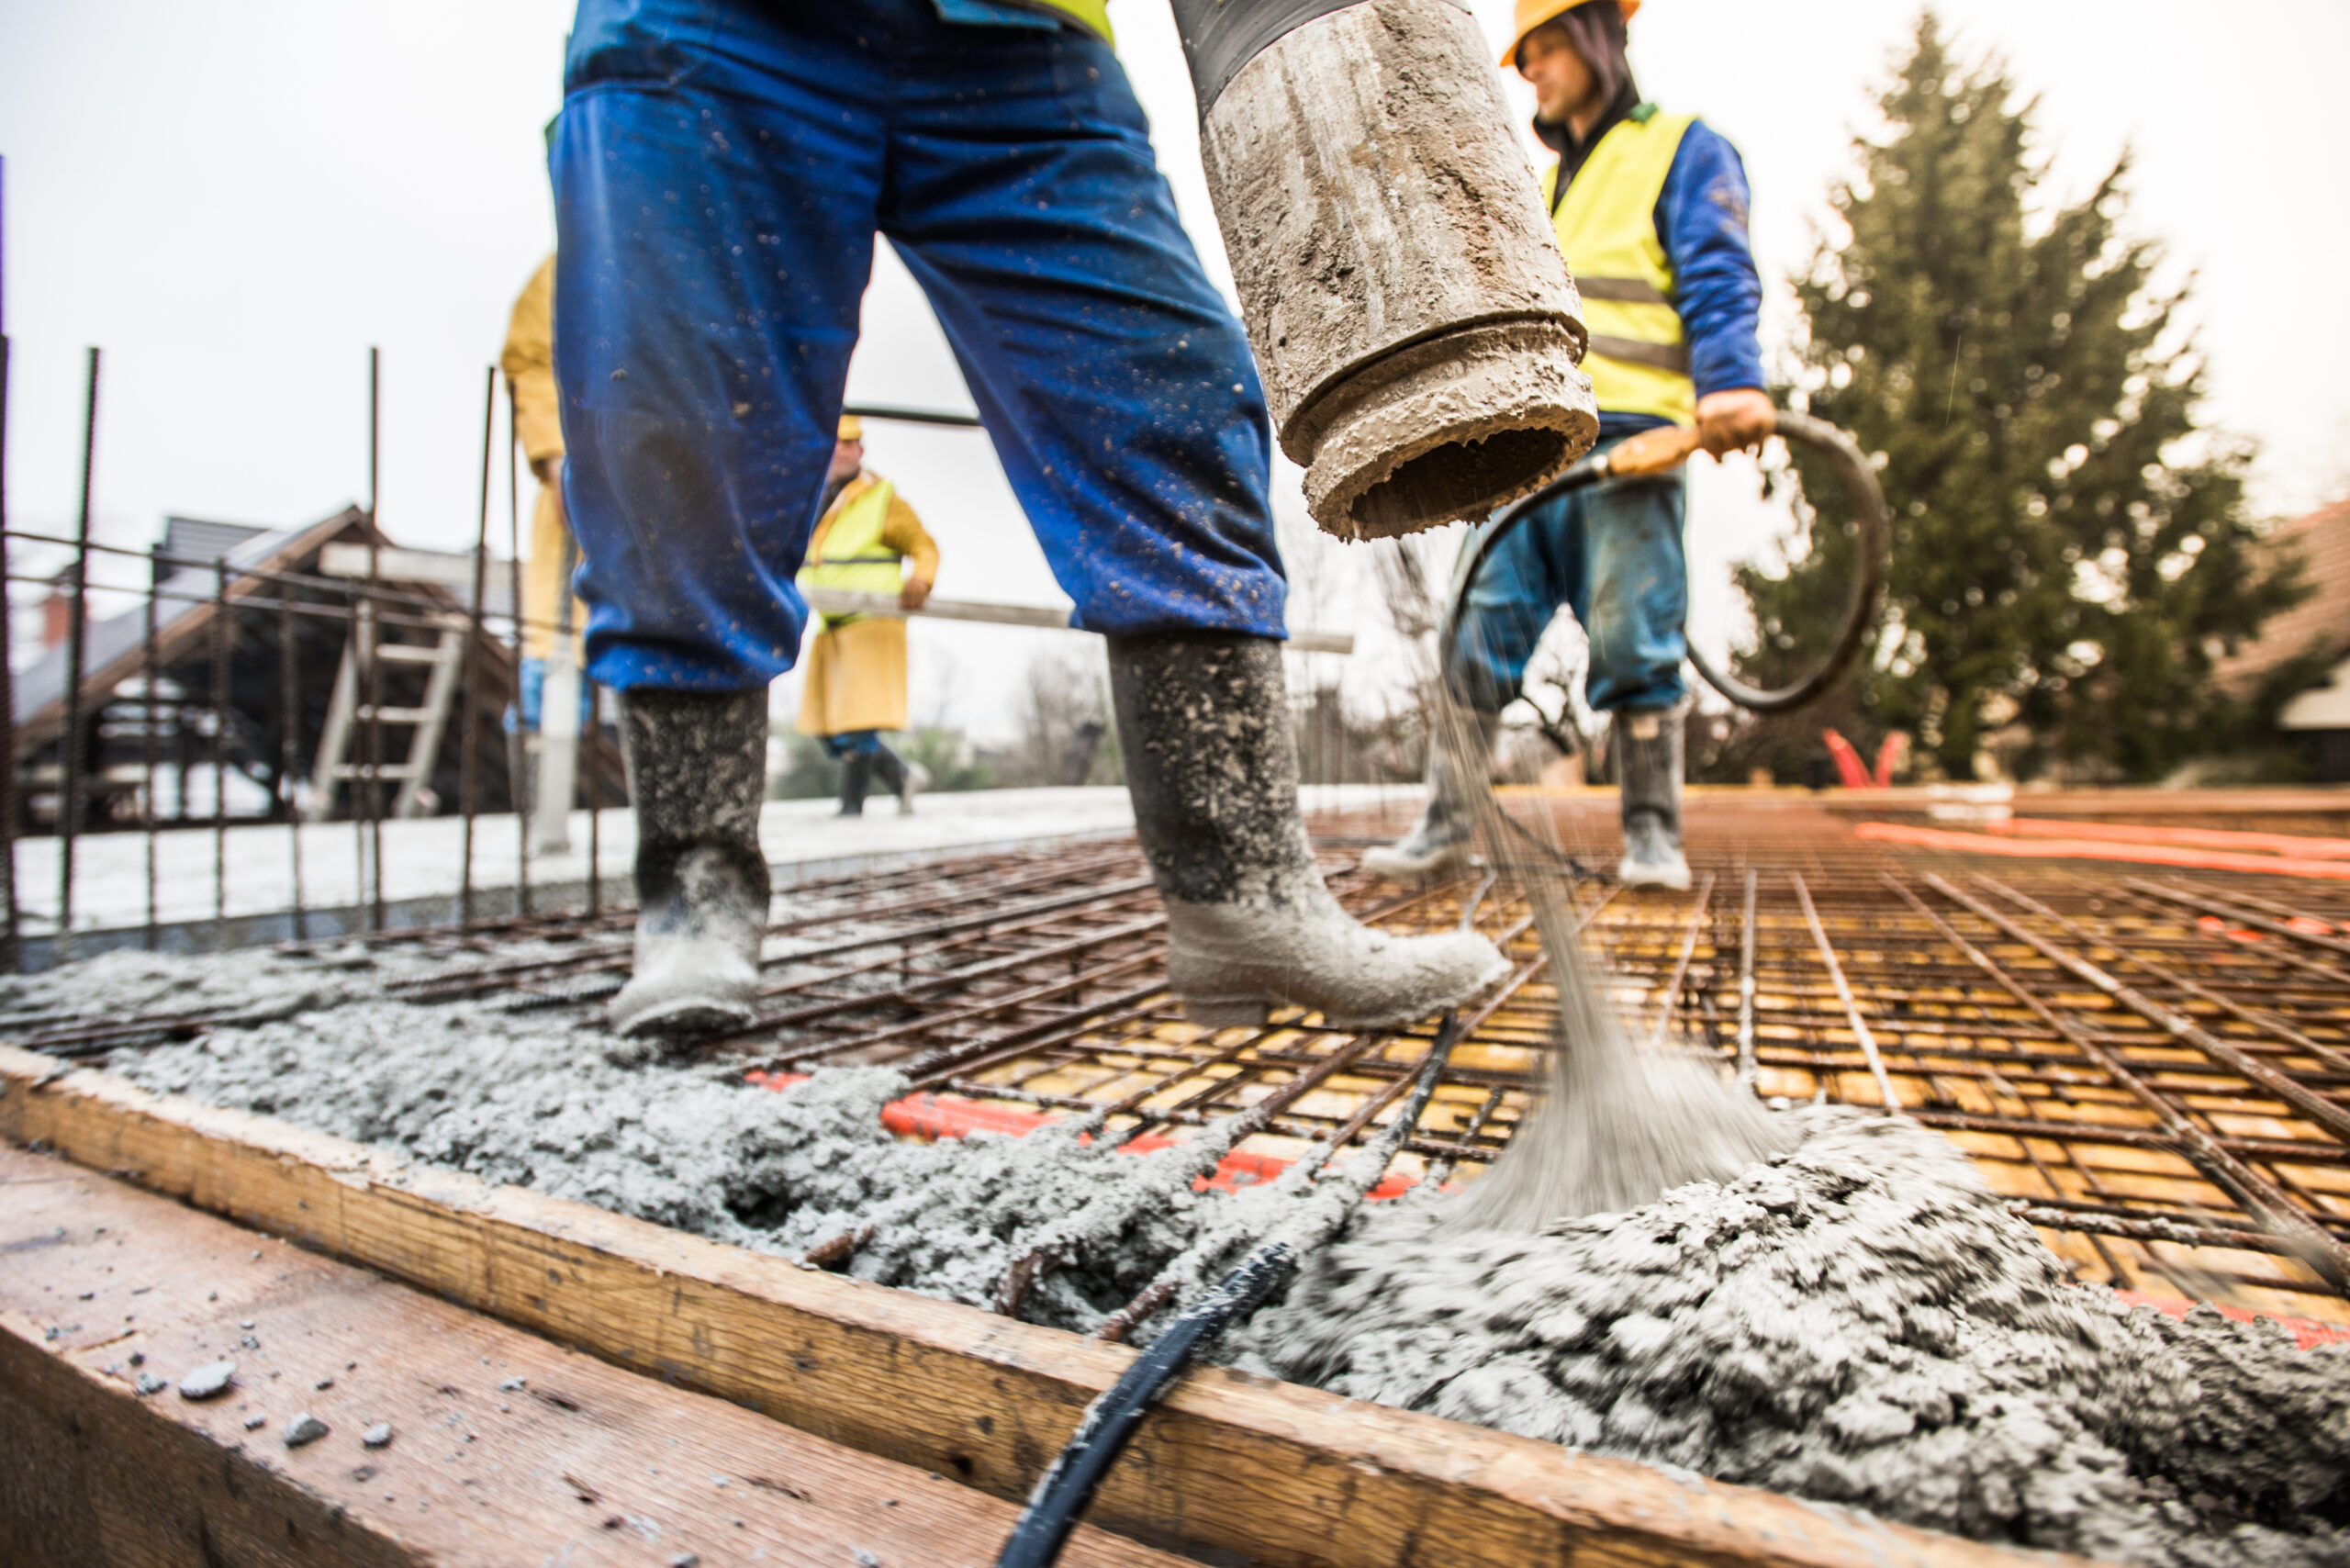 Featured image for “Zakaj naklonski beton na ravnih strehah ni več potreben?”